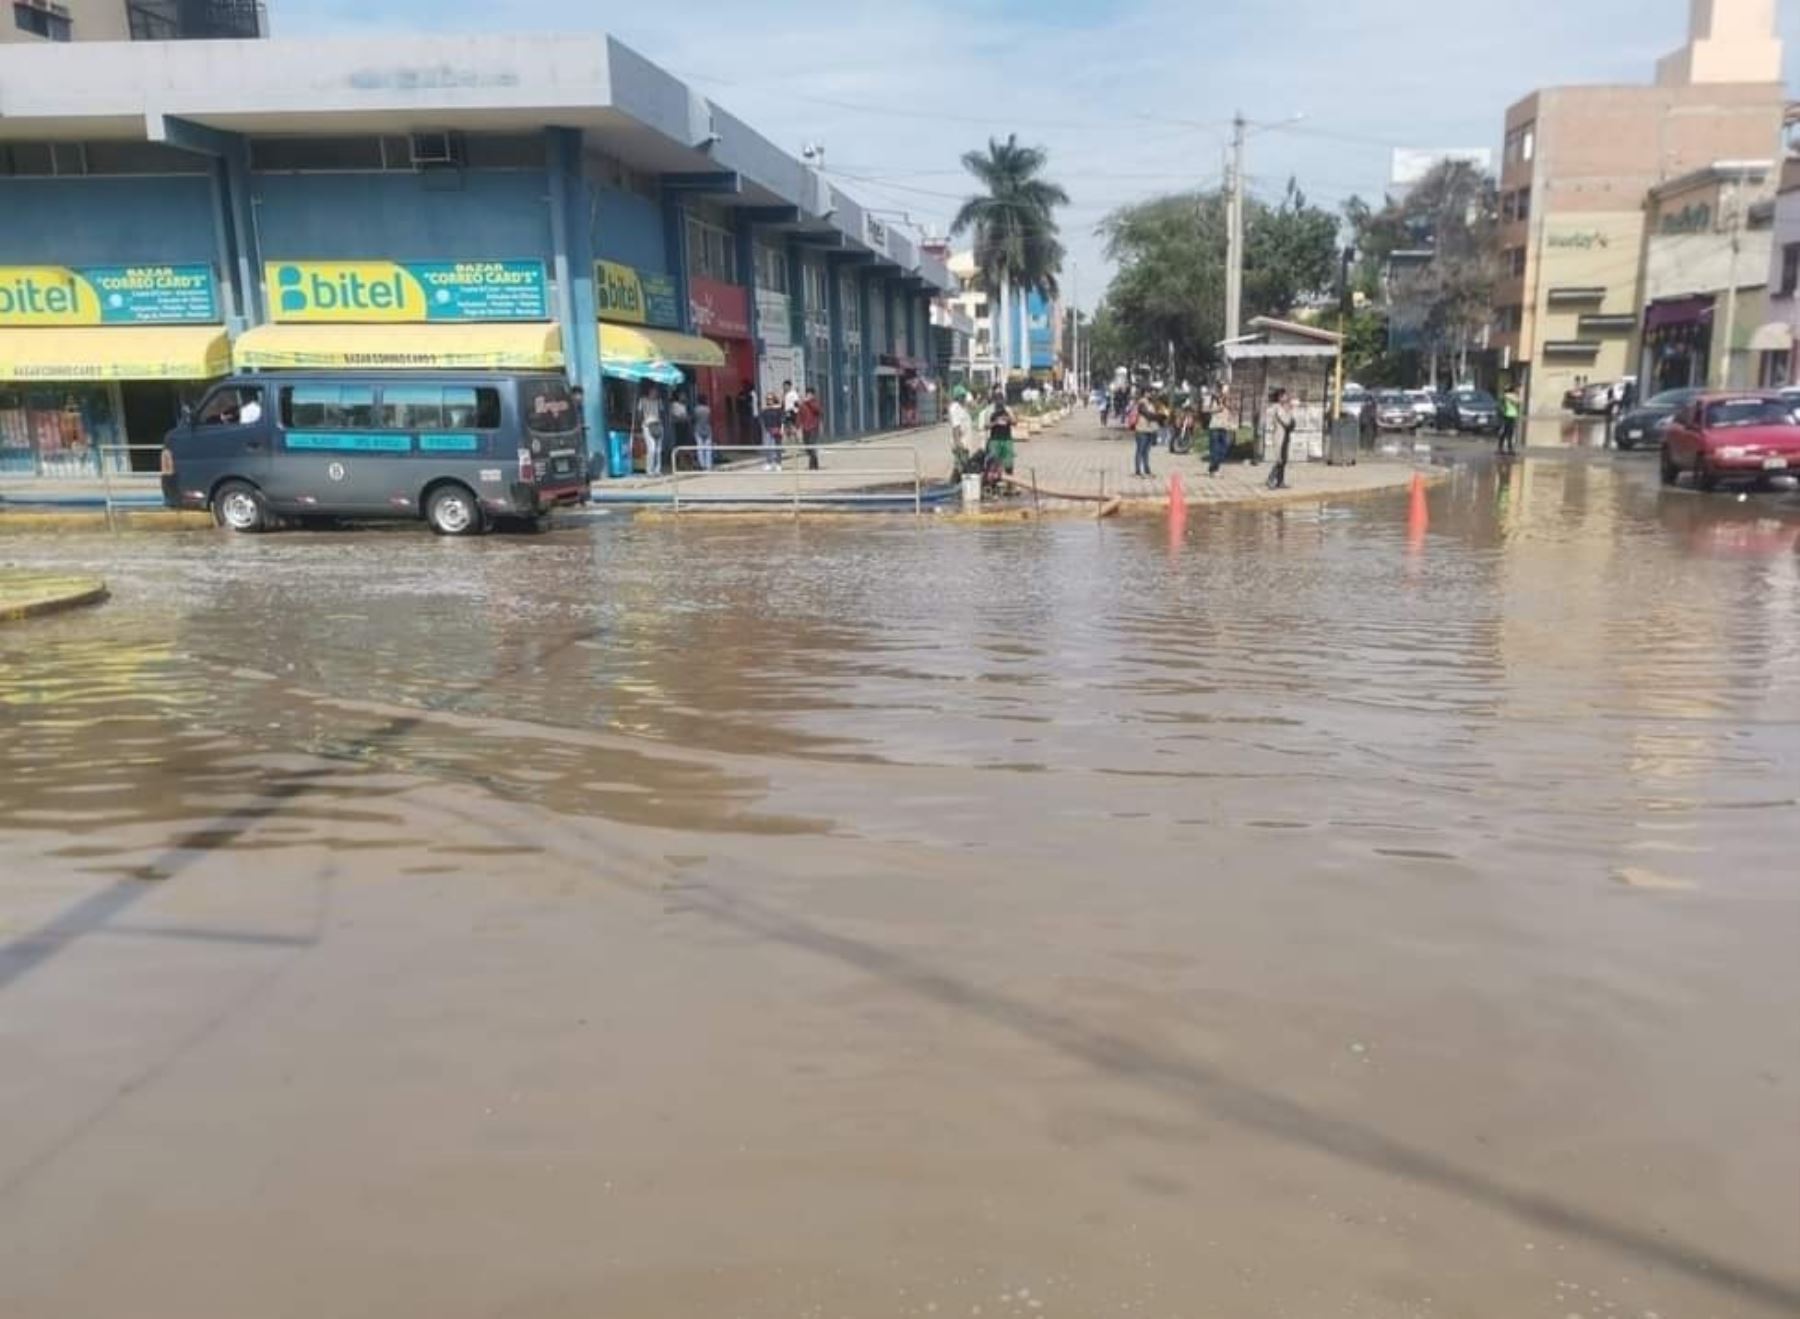 El COER Lambayeque presentó el balance de daños causados por la lluvia intensa que se registró la noche del lunes 9 de octubre y que afectó a varias localidades de la provincia de Chiclayo. ANDINA/Difusión